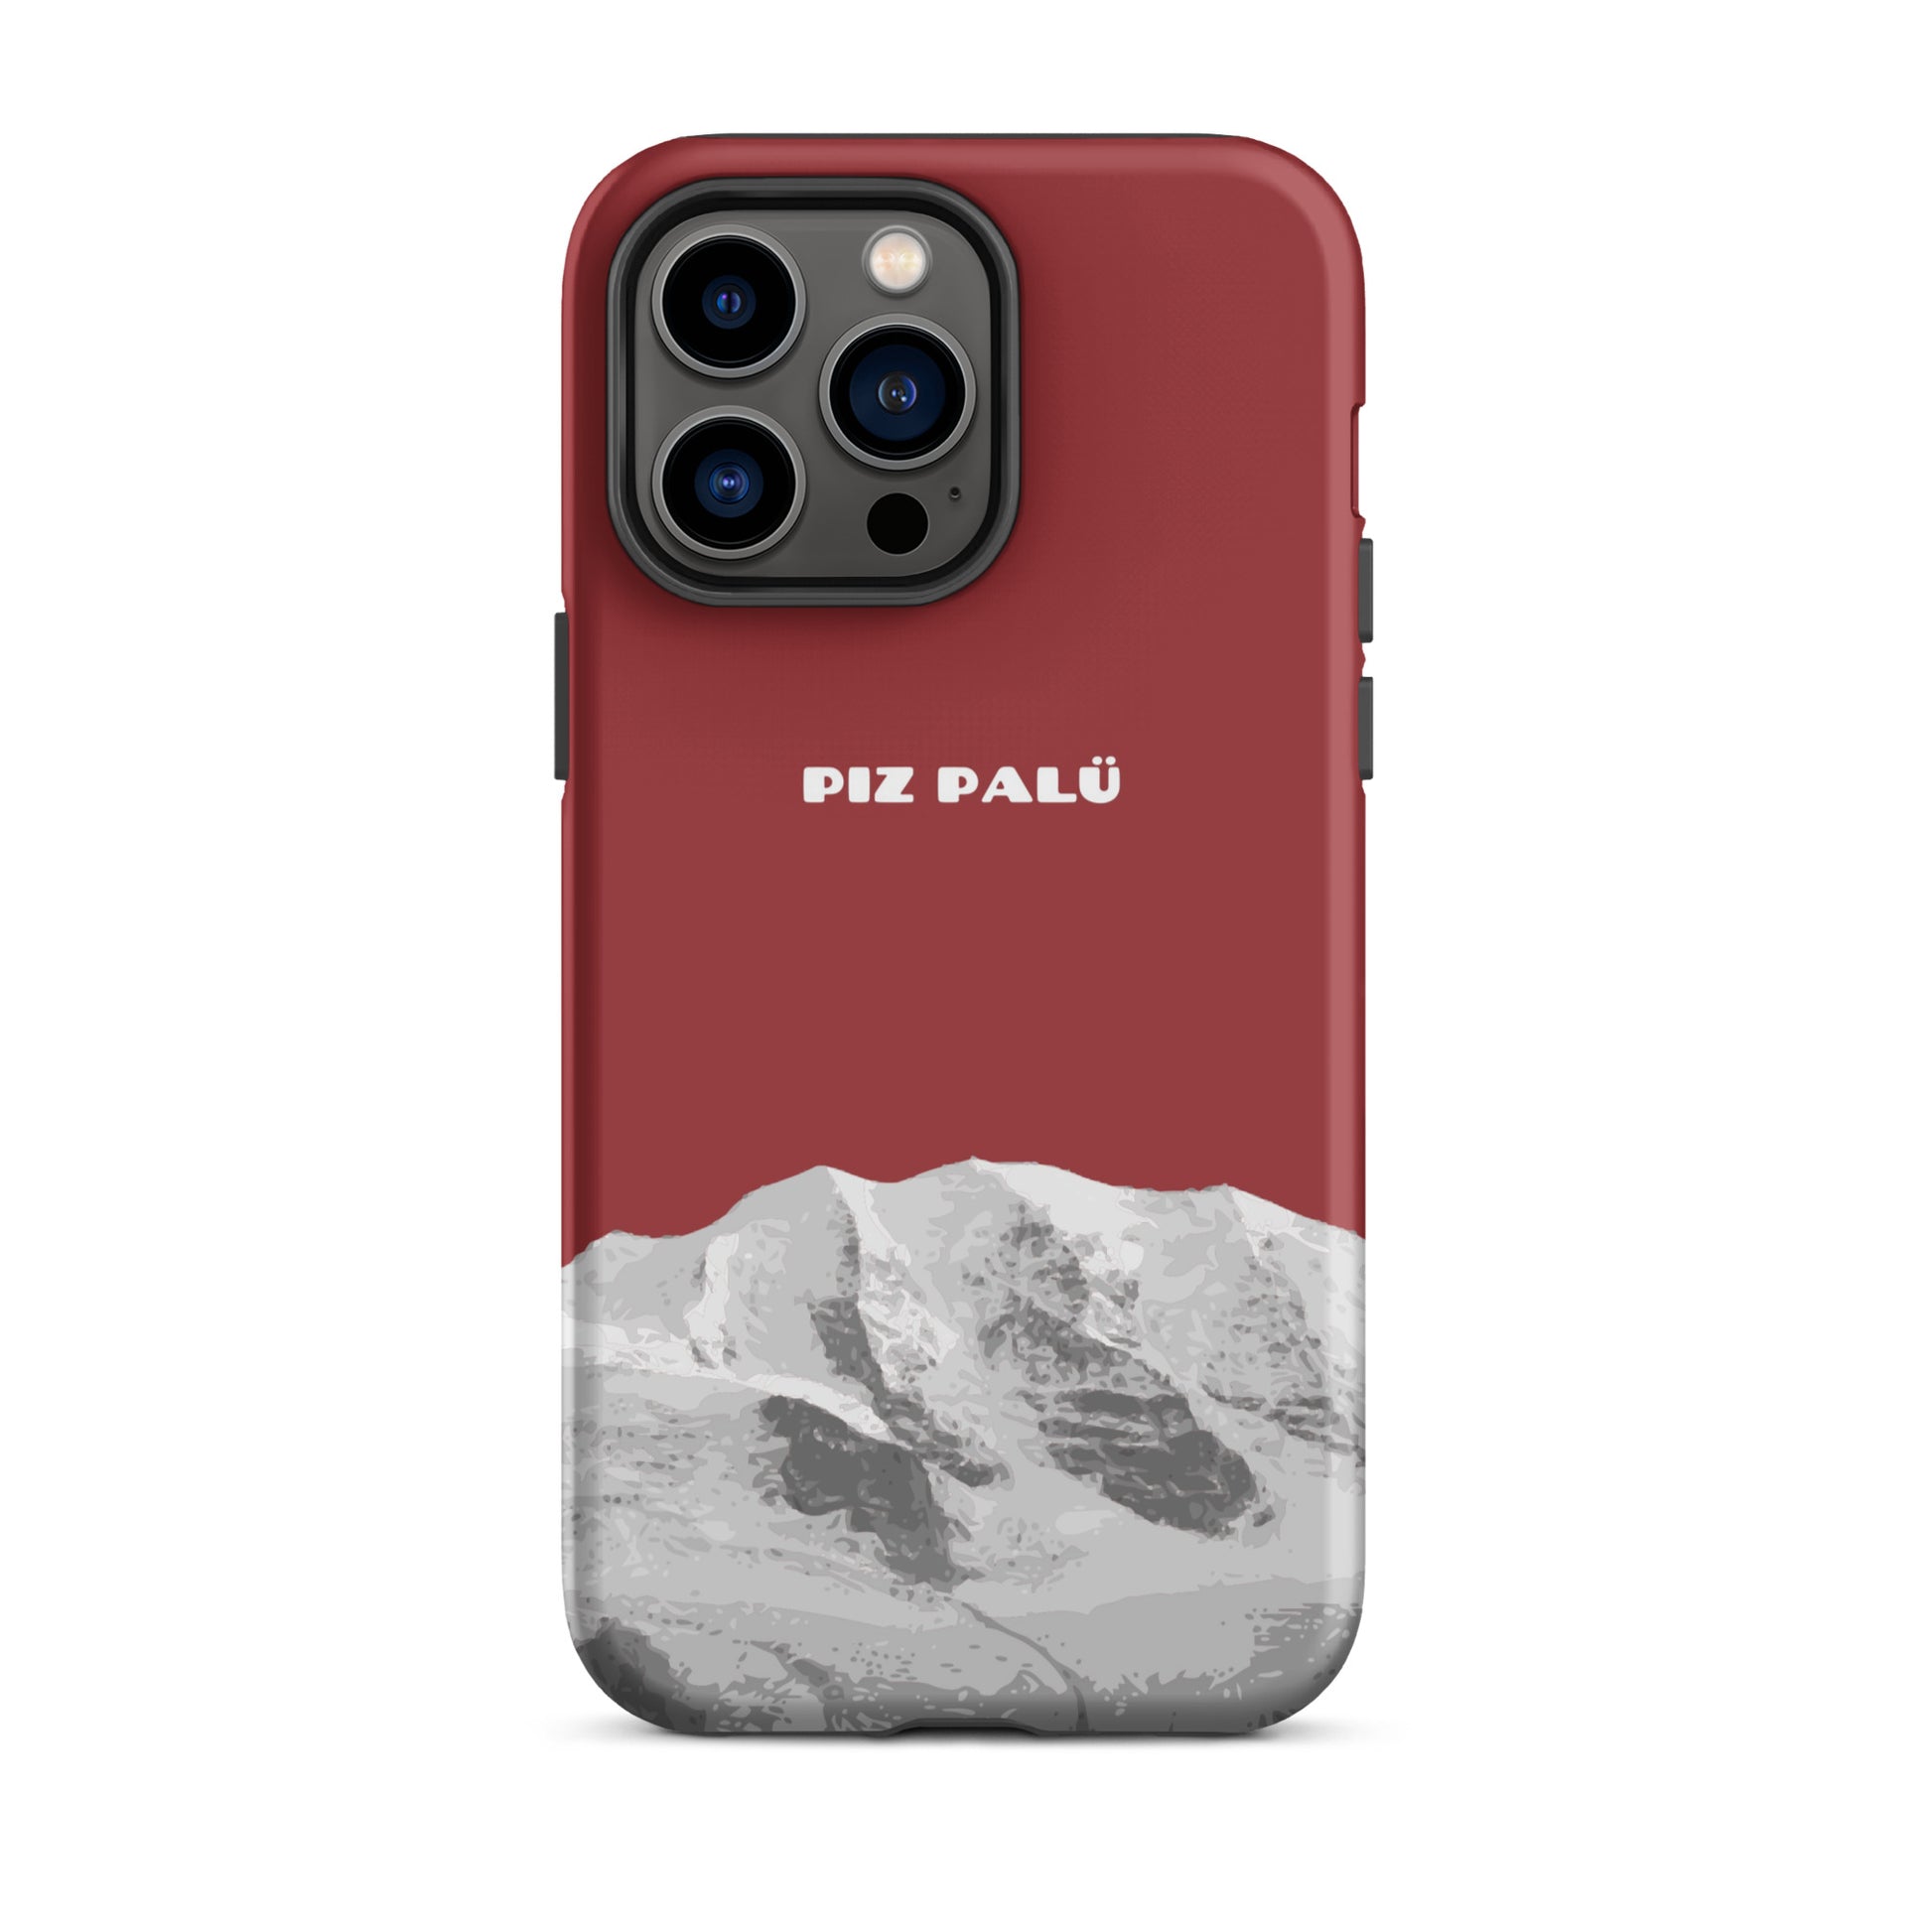 Hülle für das iPhone 14 Pro Max von Apple in der Farbe Pastellviolett, dass den Piz Palü in Graubünden zeigt.